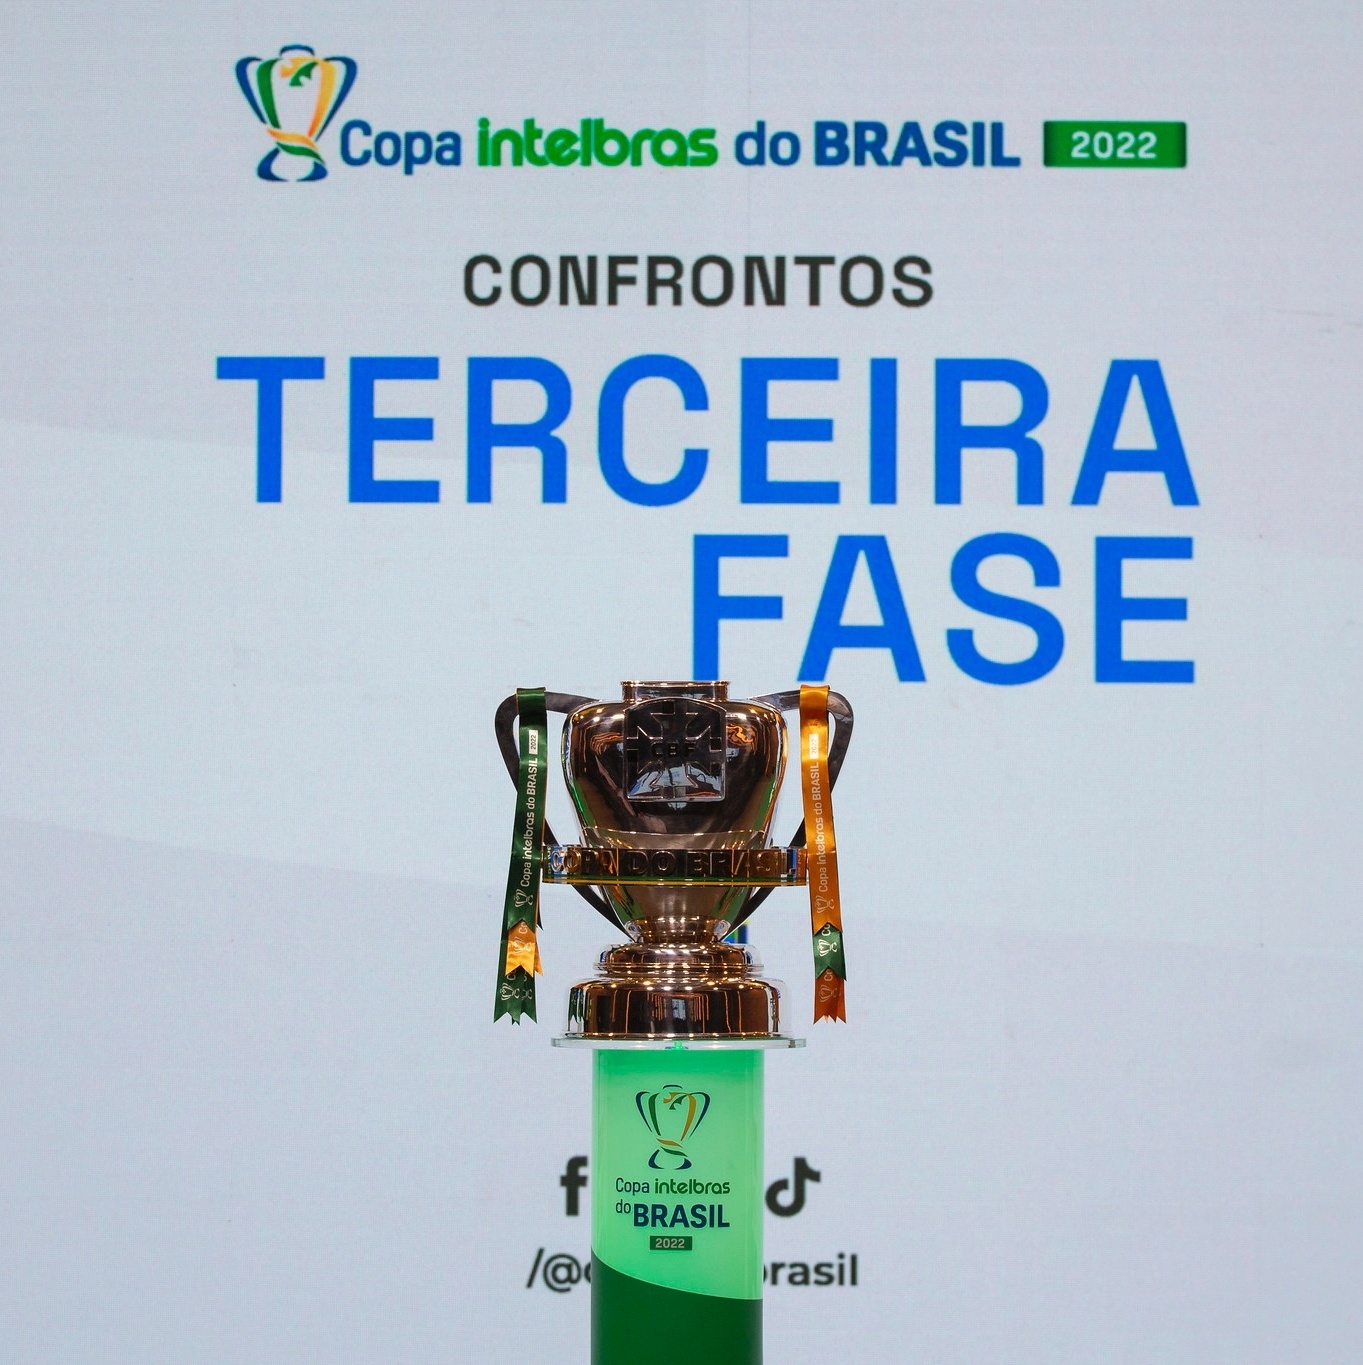 Sorteio da Copa do Brasil será nesta terça, veja datas dos jogos